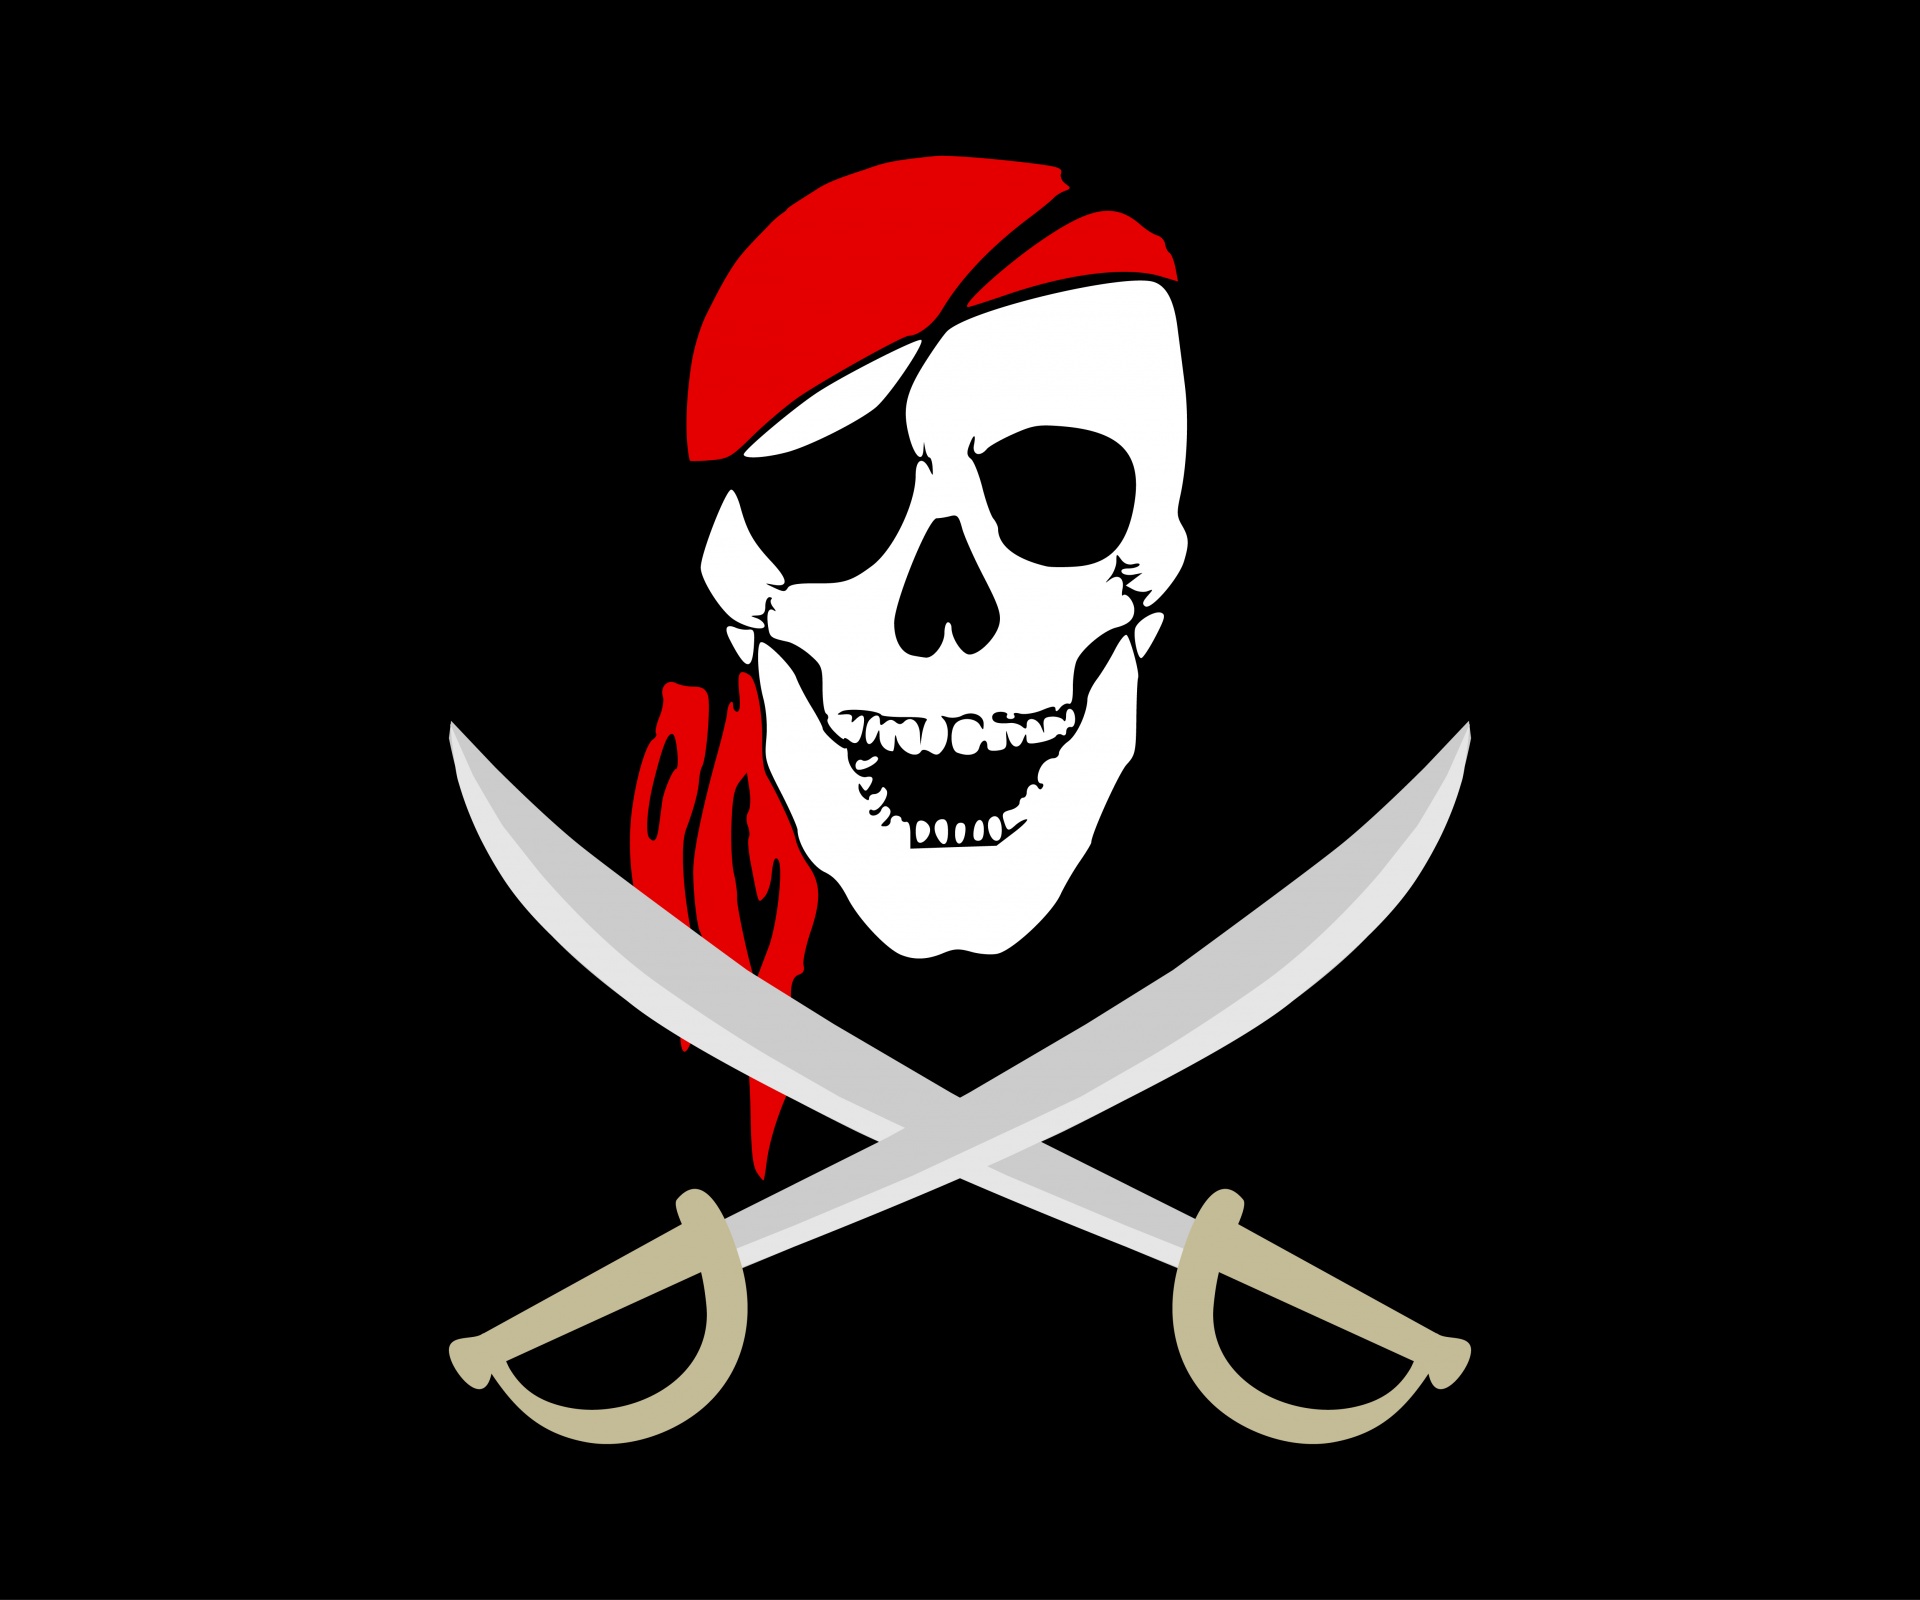 Schedel van piraat